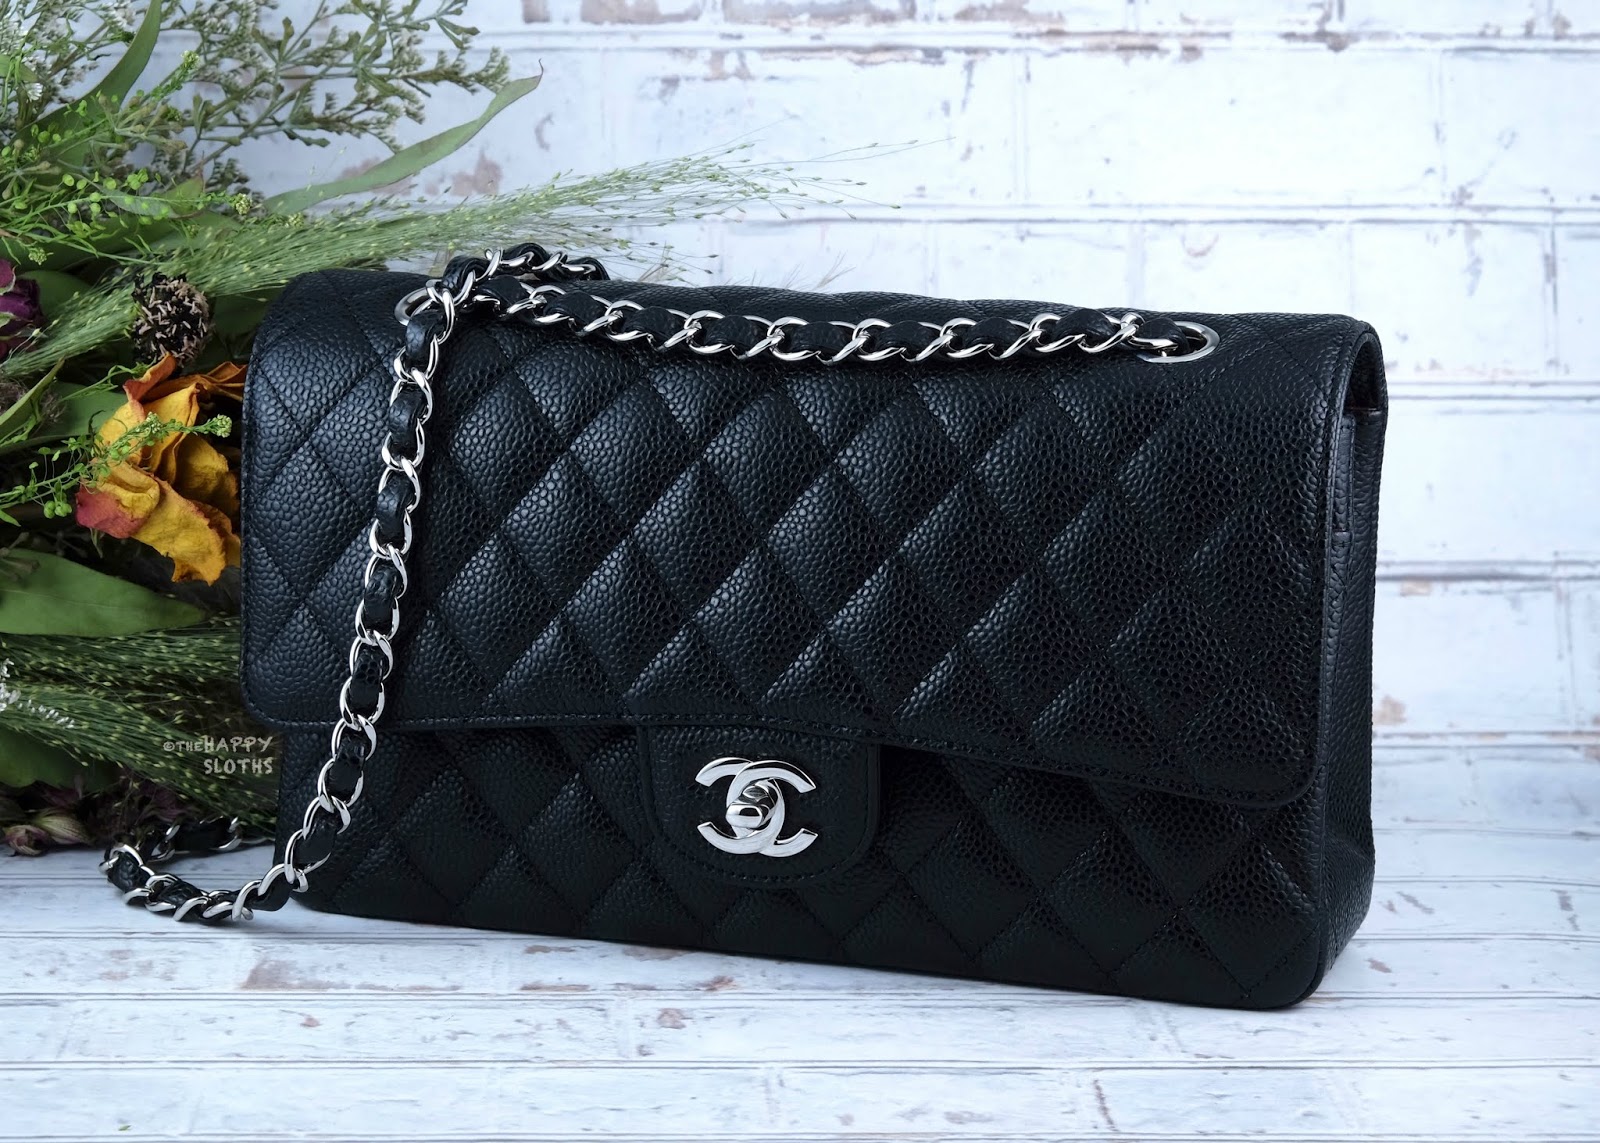 Chanel Handbag SA